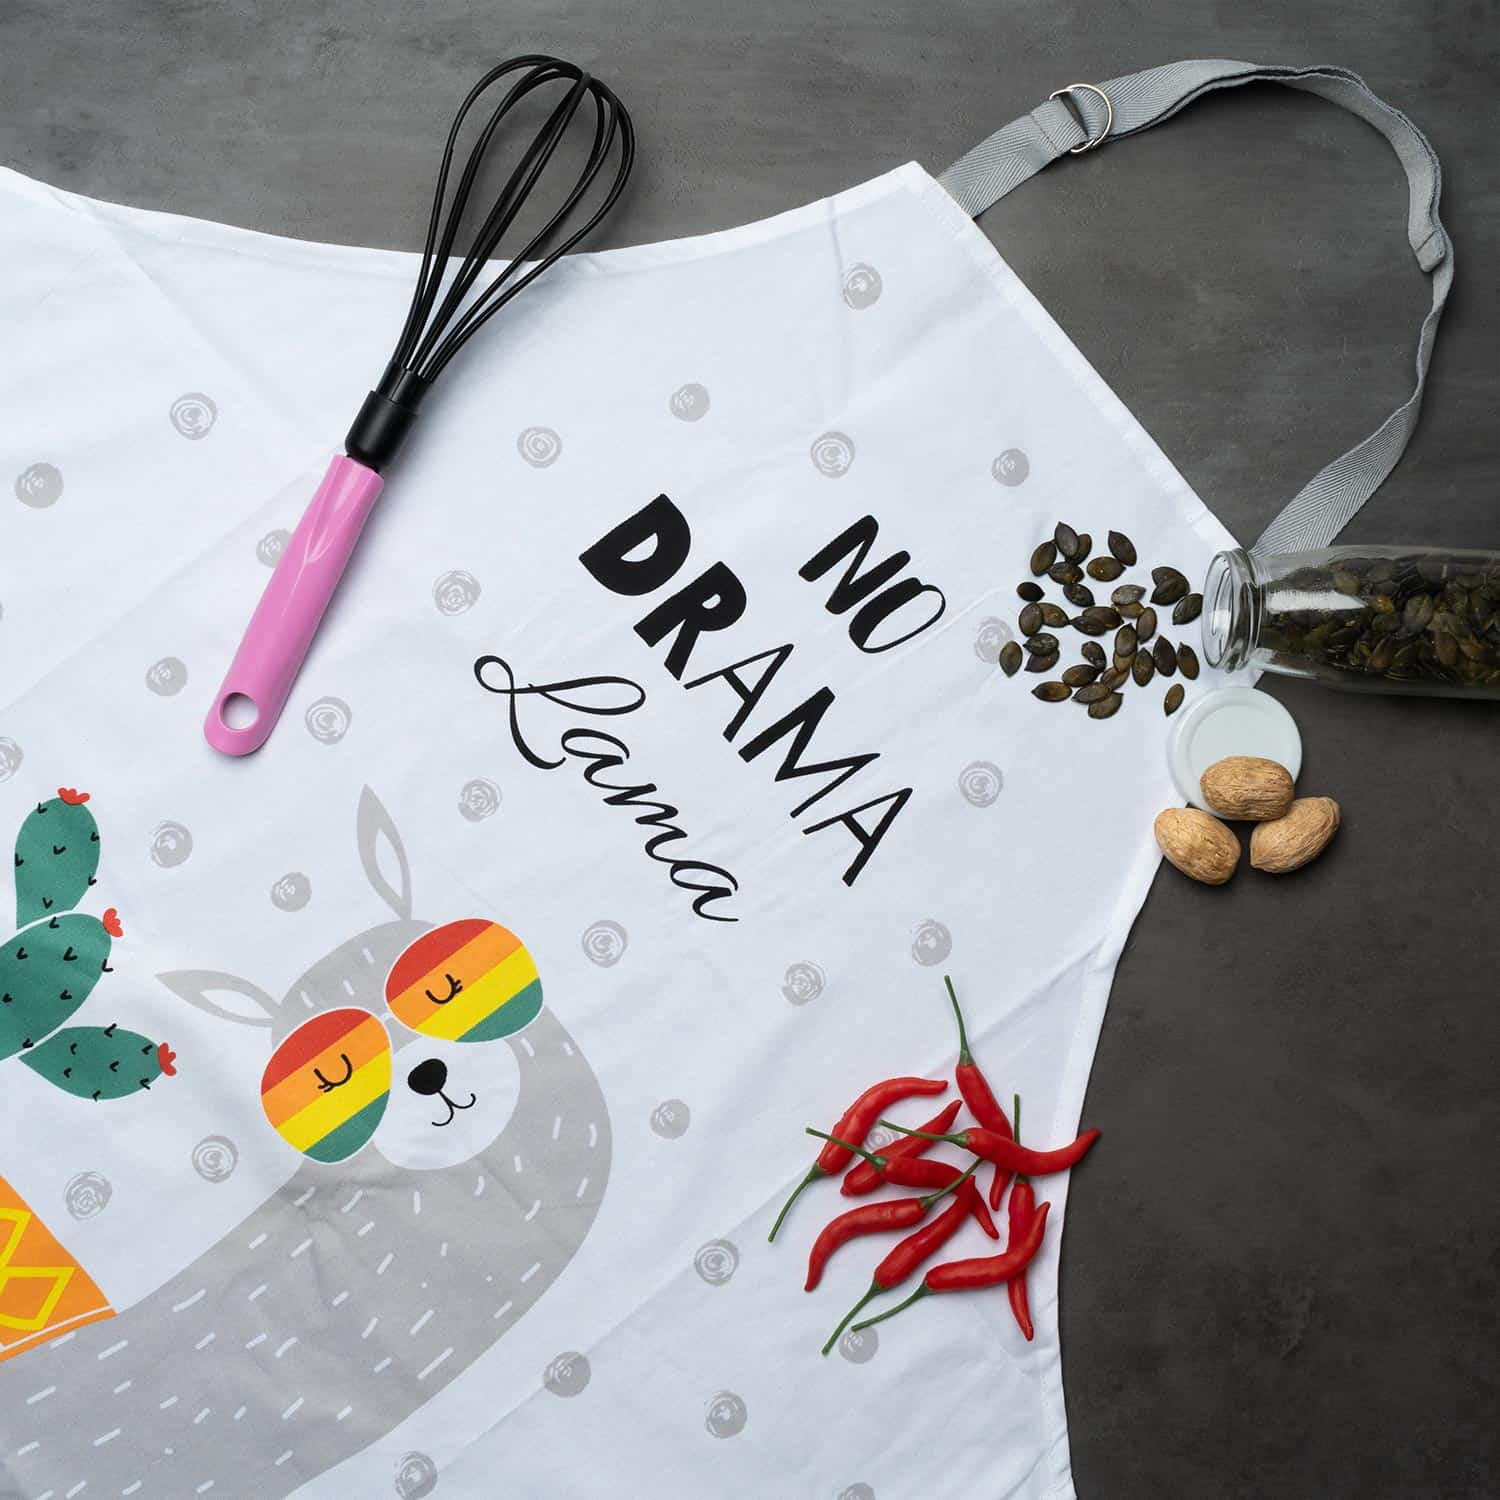 Kochschürze mit Lama und Text "No Drama Lama" mit Regenbogenbrille, schön dekoriert